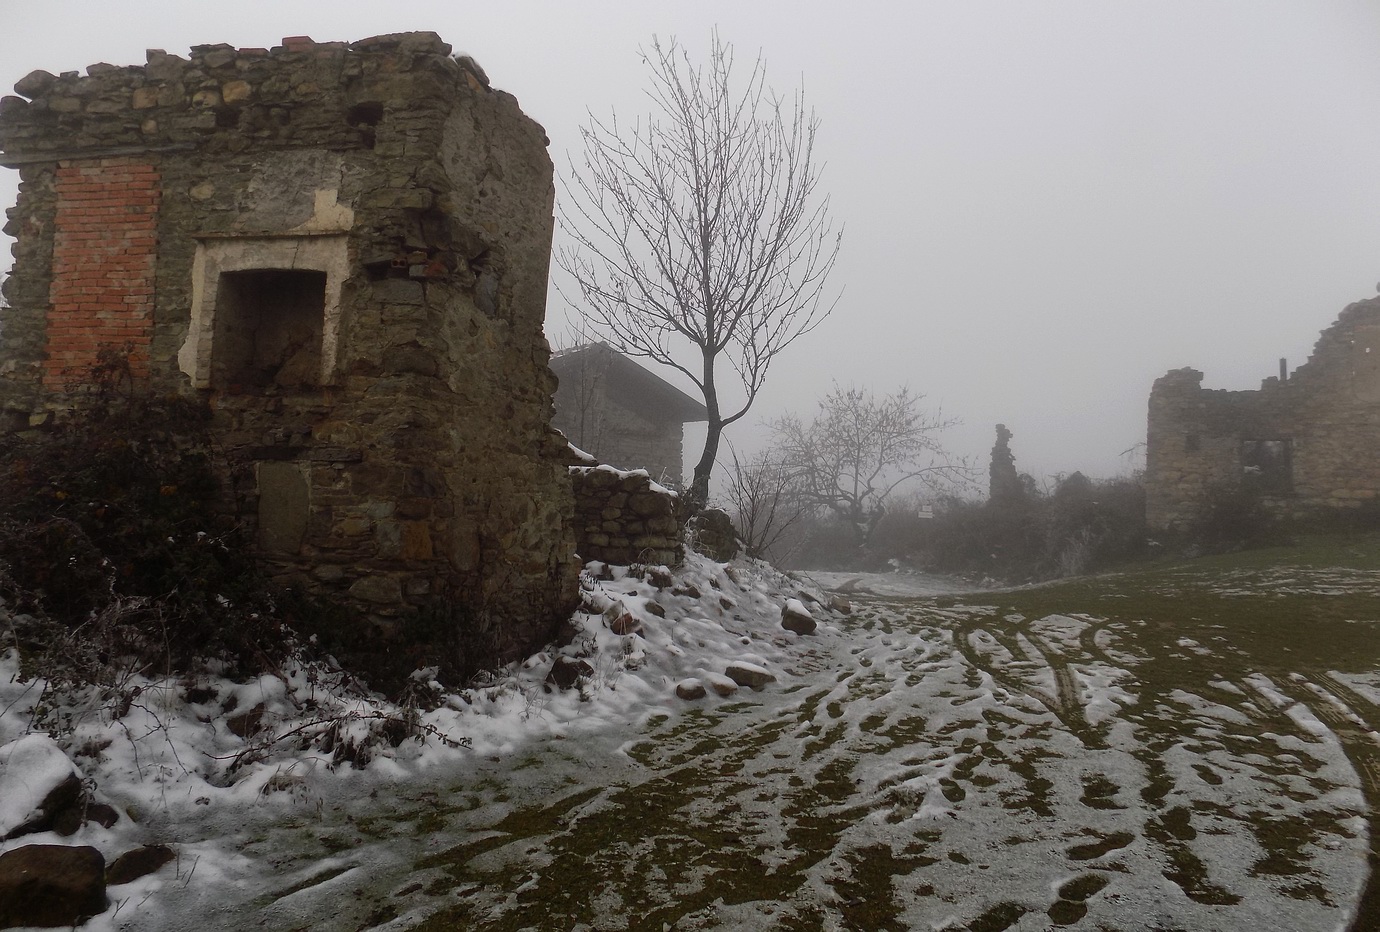 Il paese fantasma di Rivarossa in Val Borbera (al)...